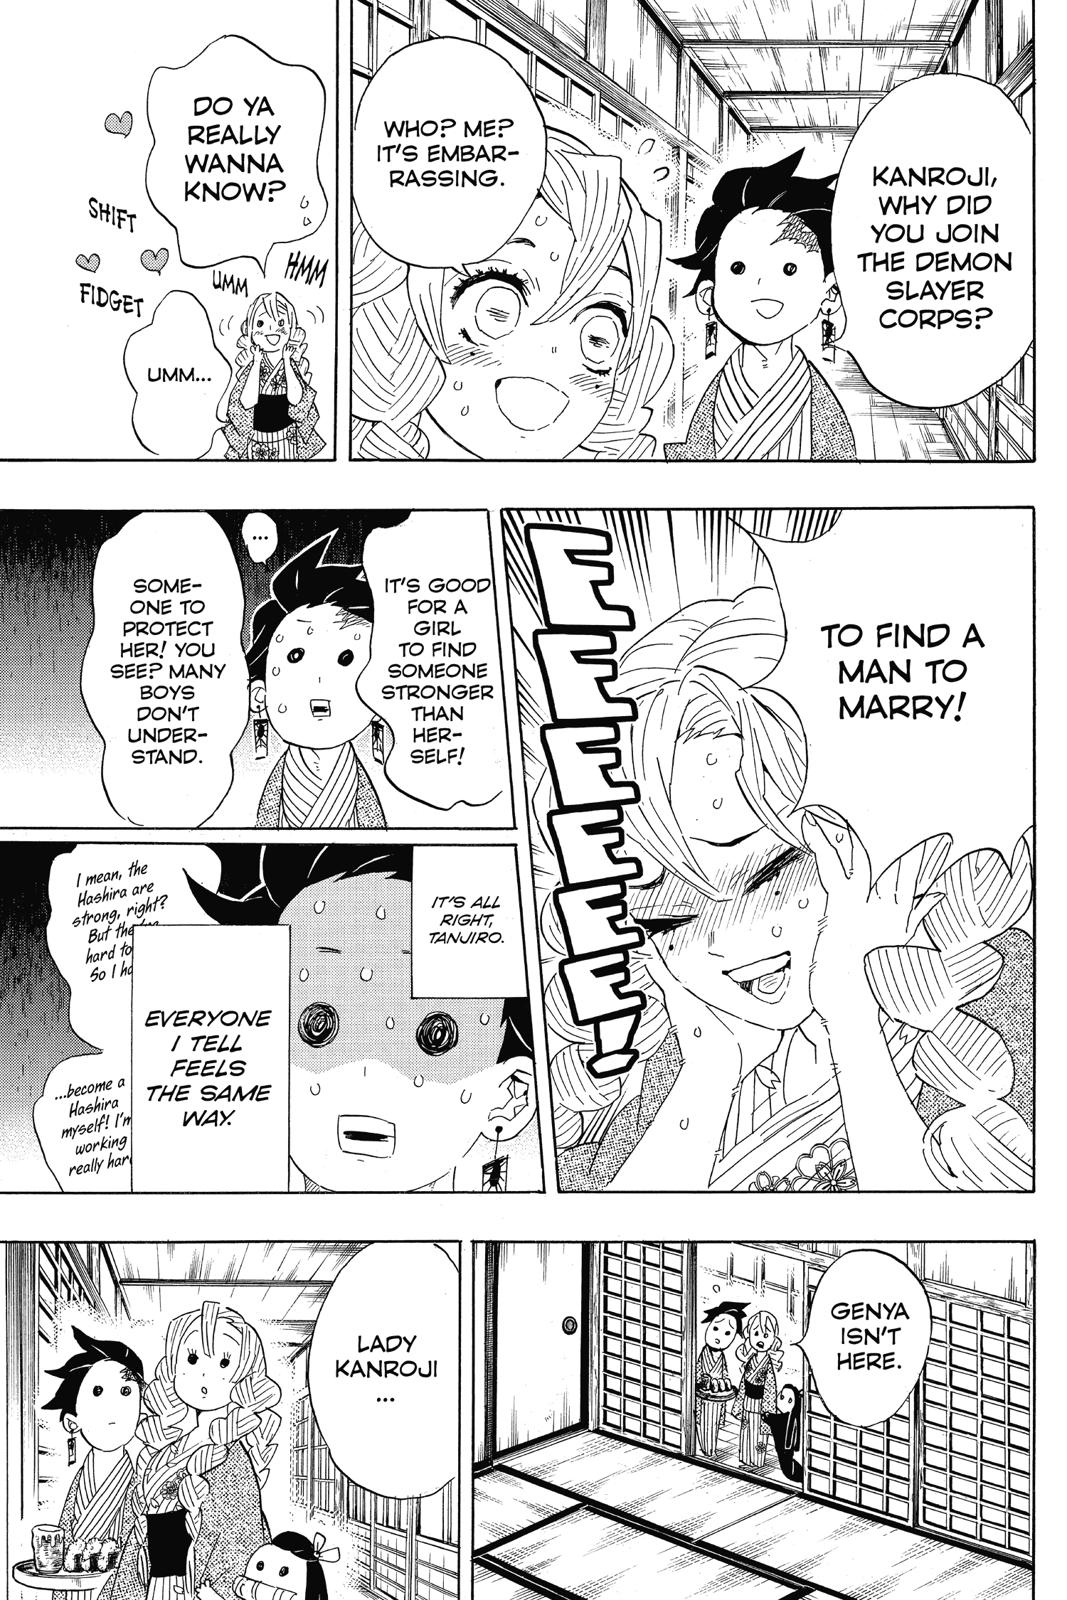 Demon Slayer Manga Manga Chapter - 101 - image 9